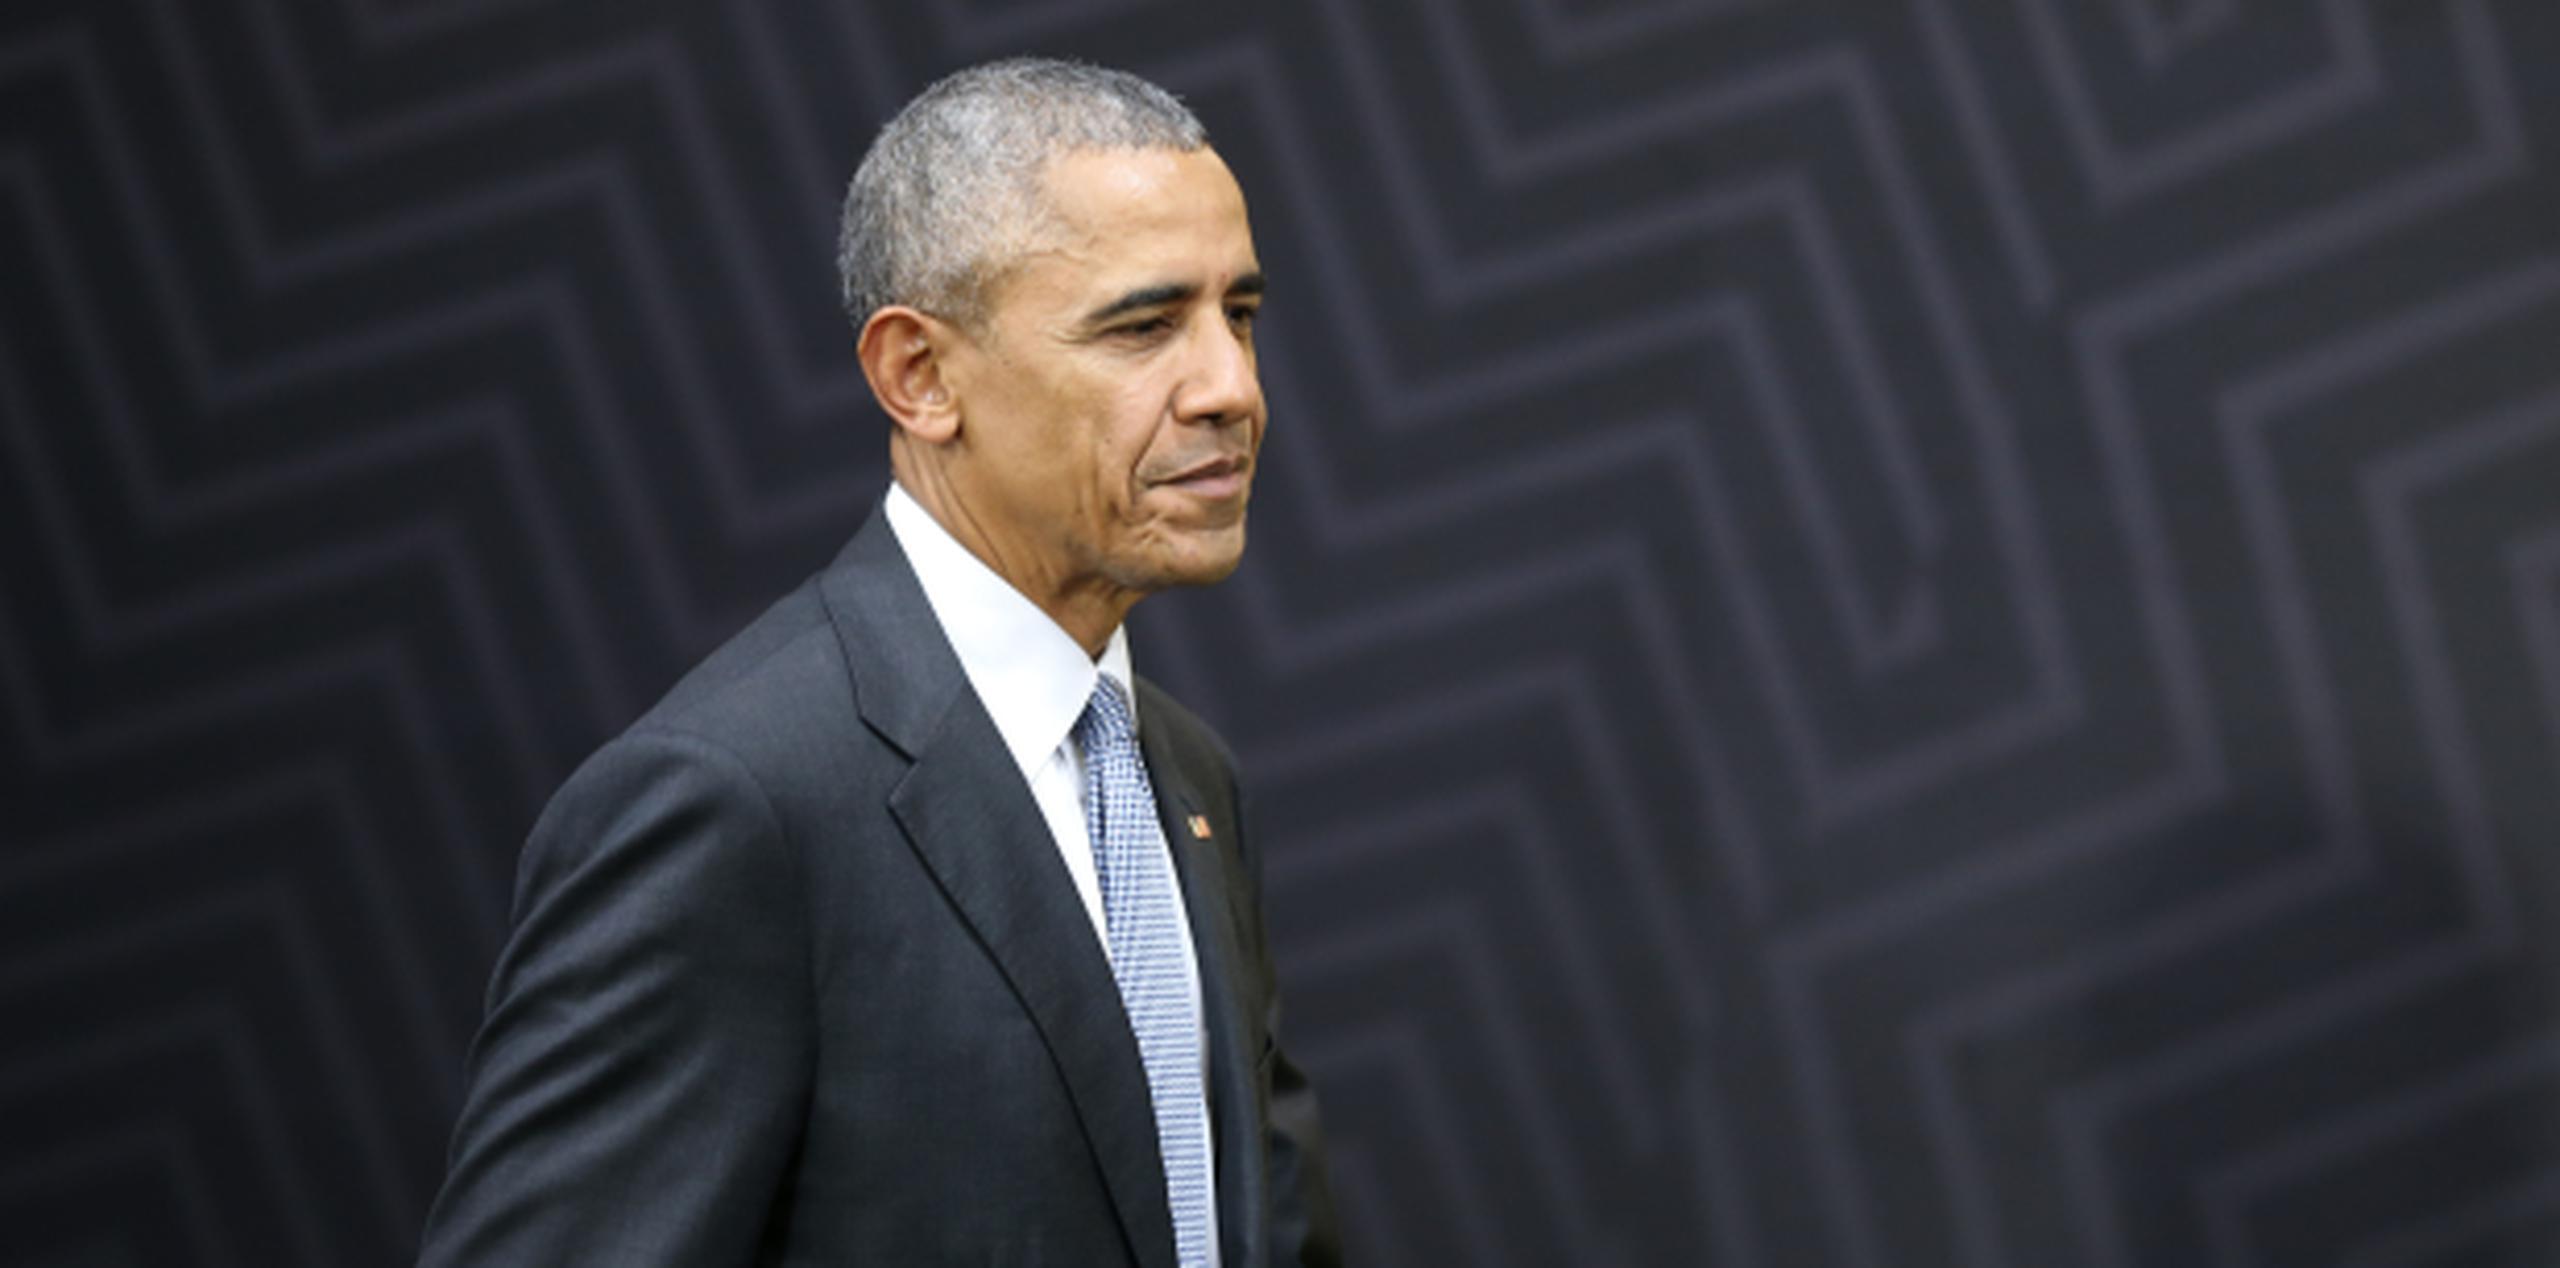 Obama dejó su cargo el pasado 20 de enero. (EFE / Ernesto Arias)